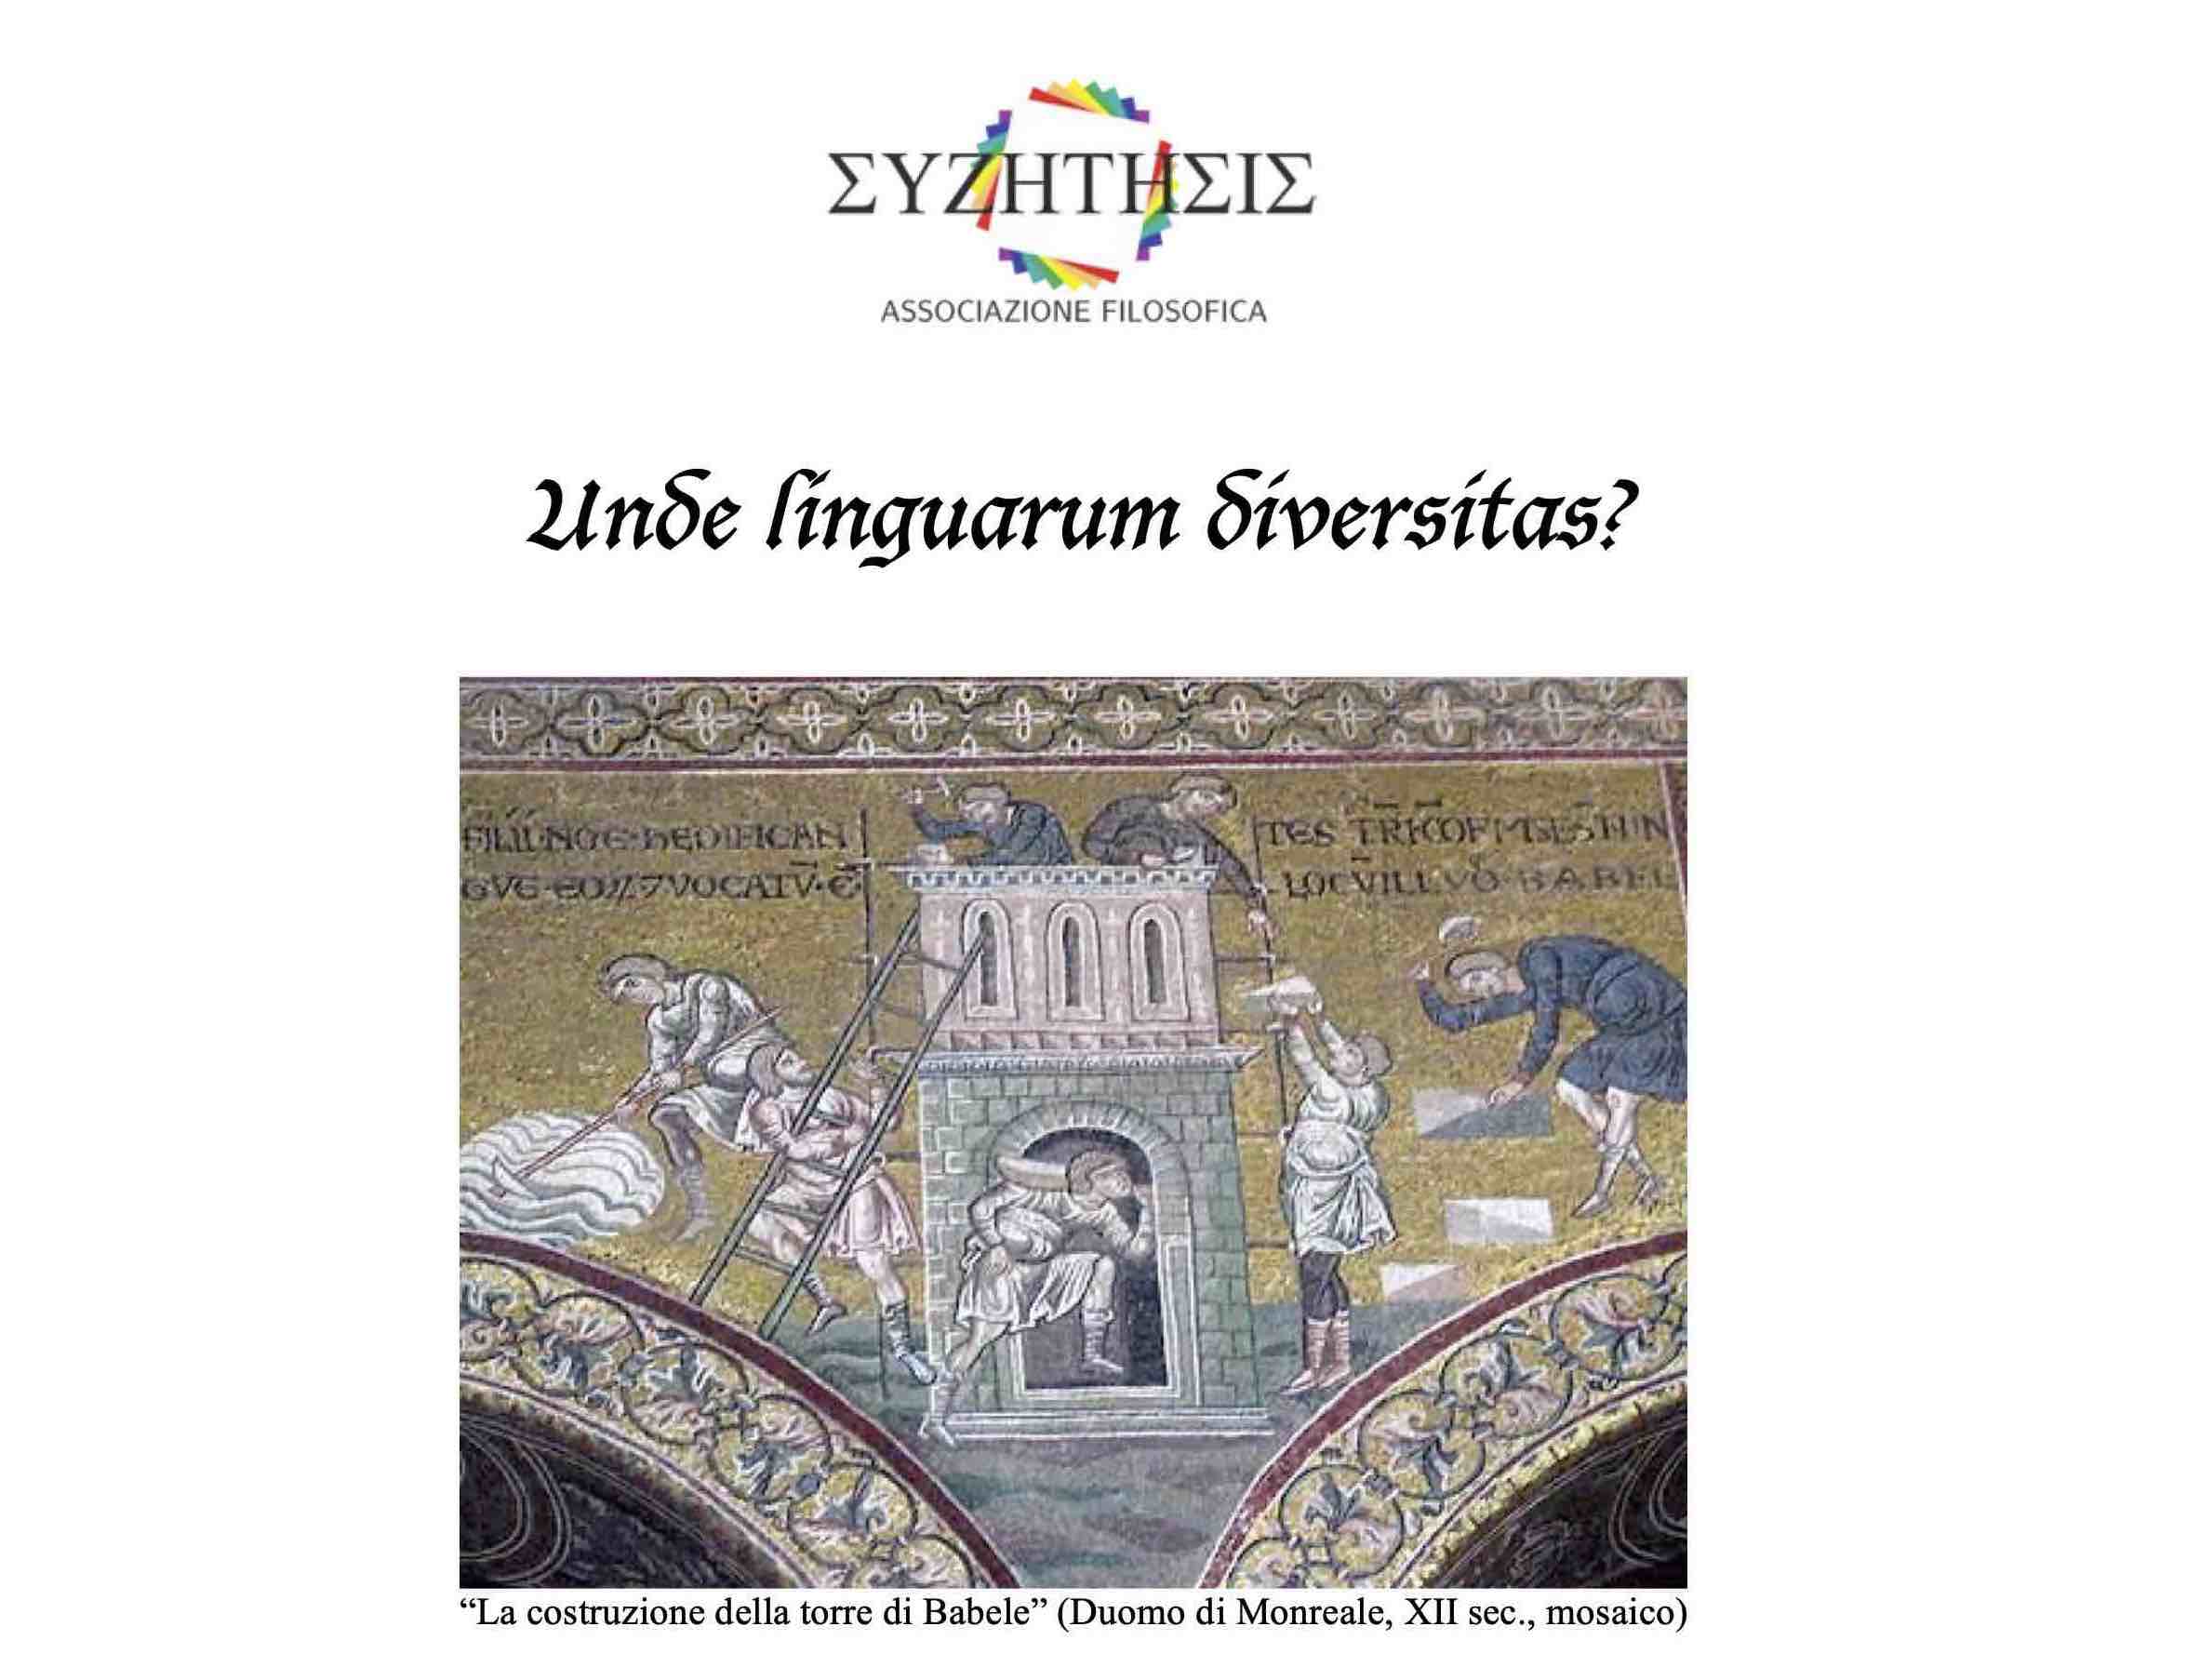 Unde Linguarum Diversitats?